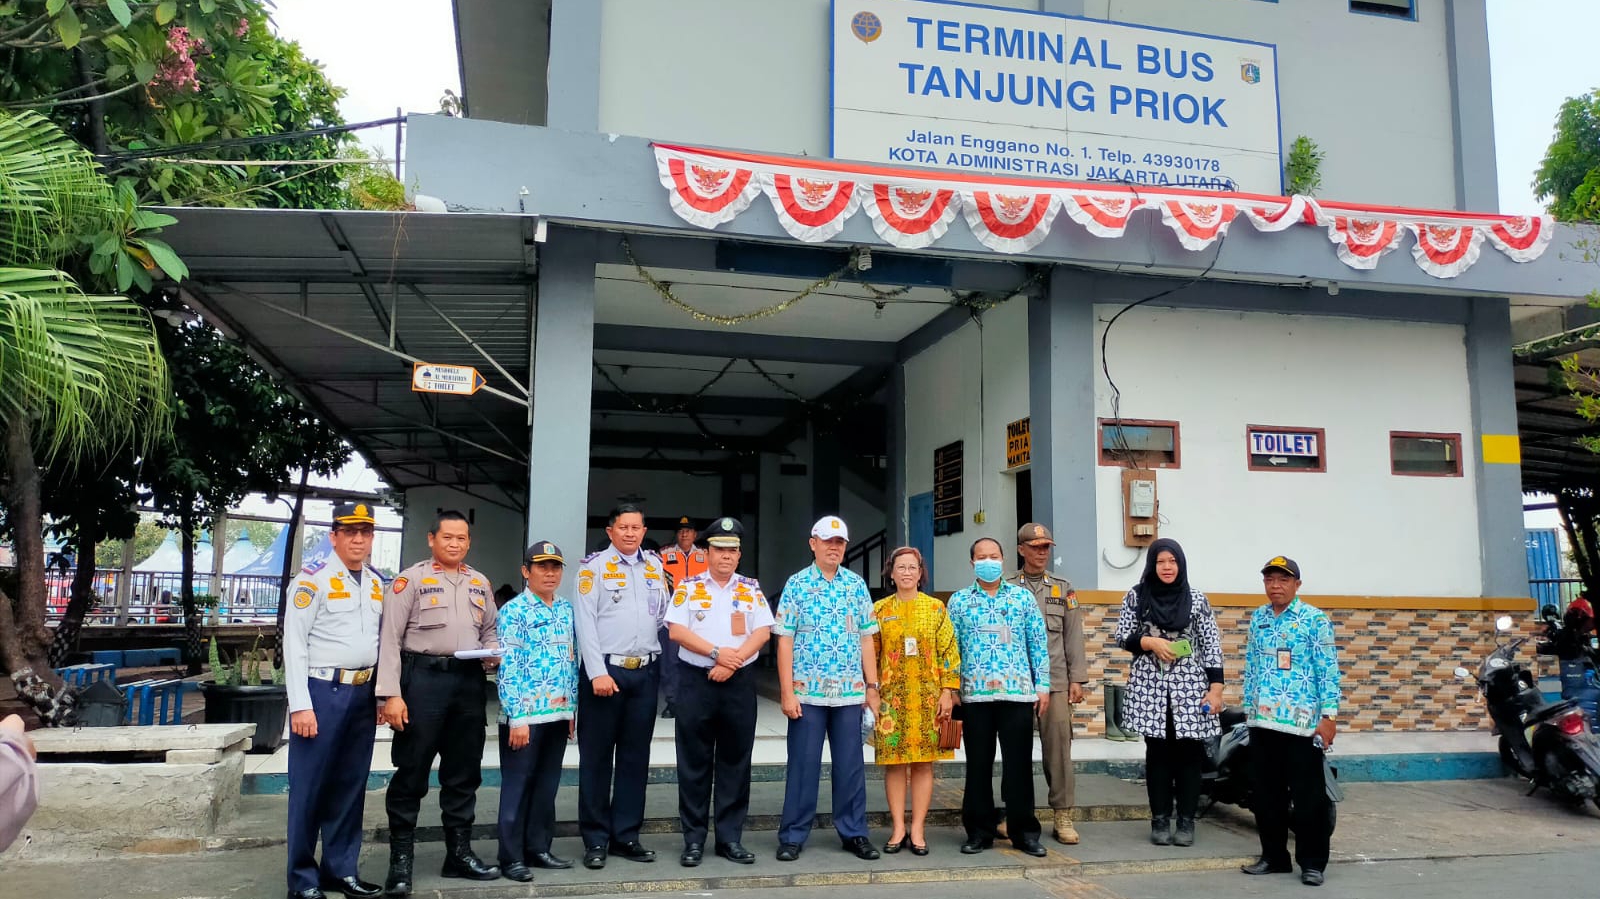 Kini Penumpang dari Terminal Bus Tanjung Priok Bisa Langsung Ke Bali